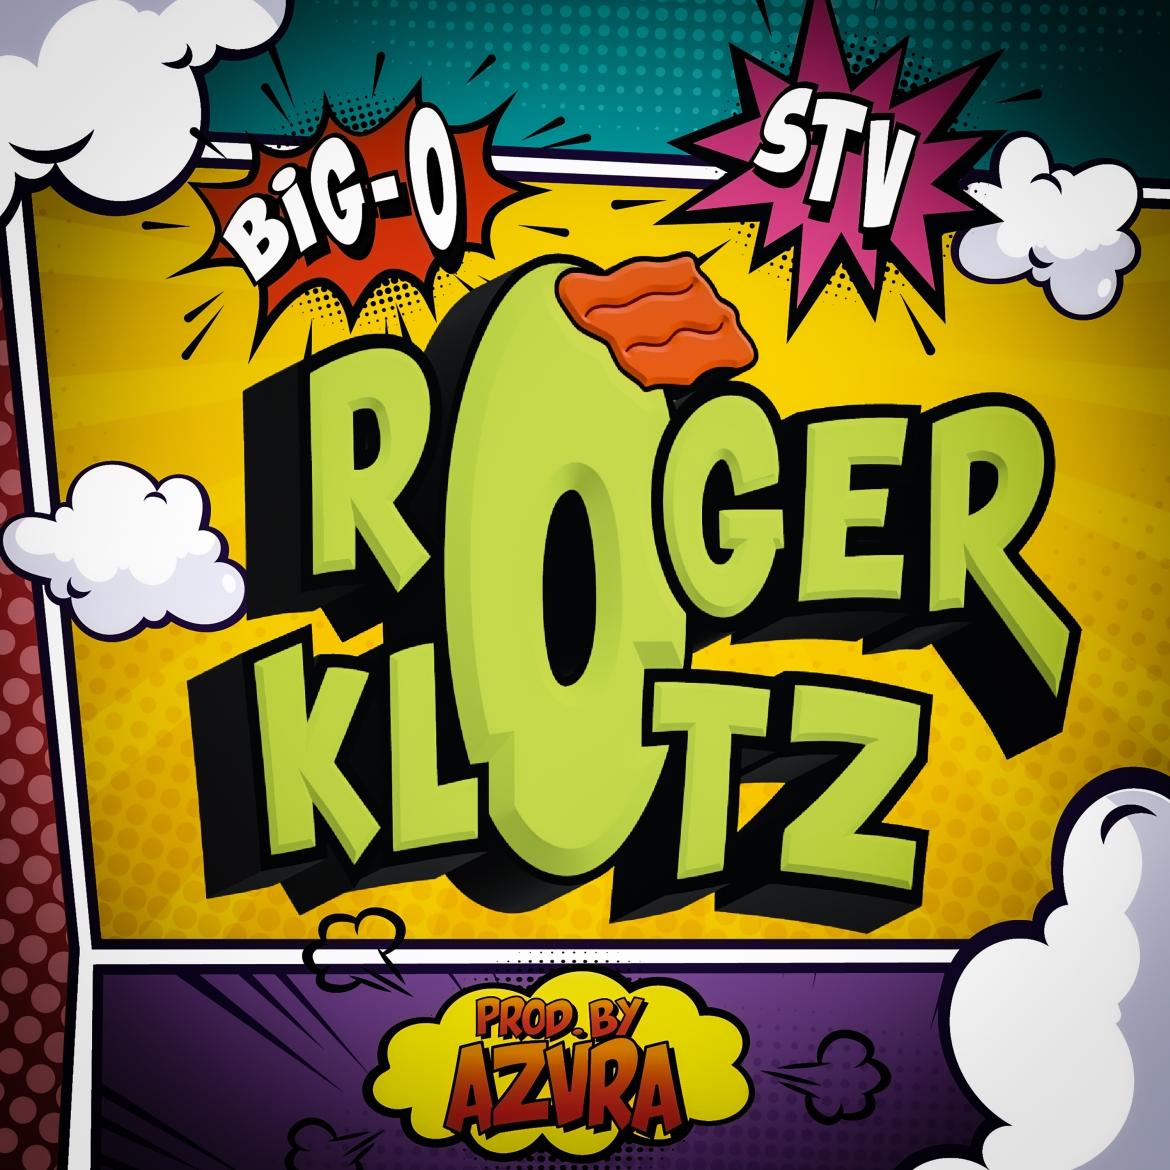 Big O & STV - Roger Klotz (prod. by AZVRA)